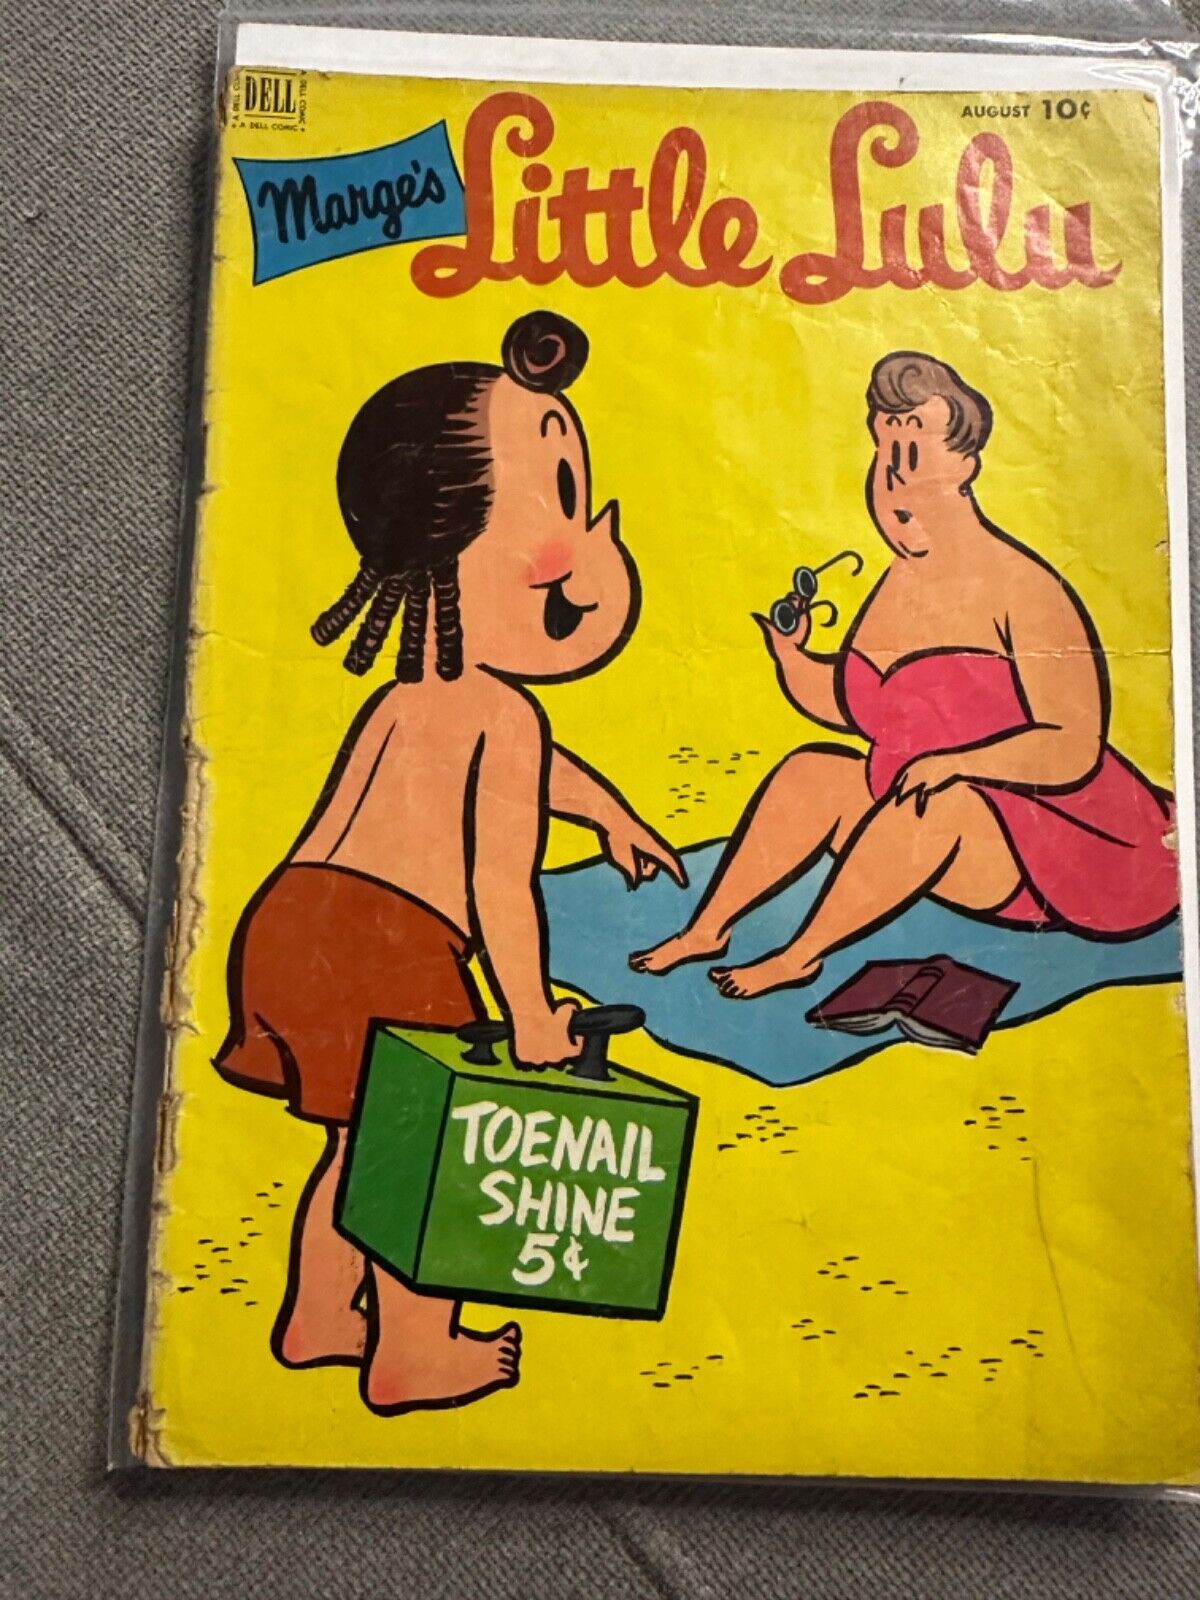 LITTLE LULU # 50 (DELL) (1952) JOHN STANLEY & IRVING TRIPP - TUBBY